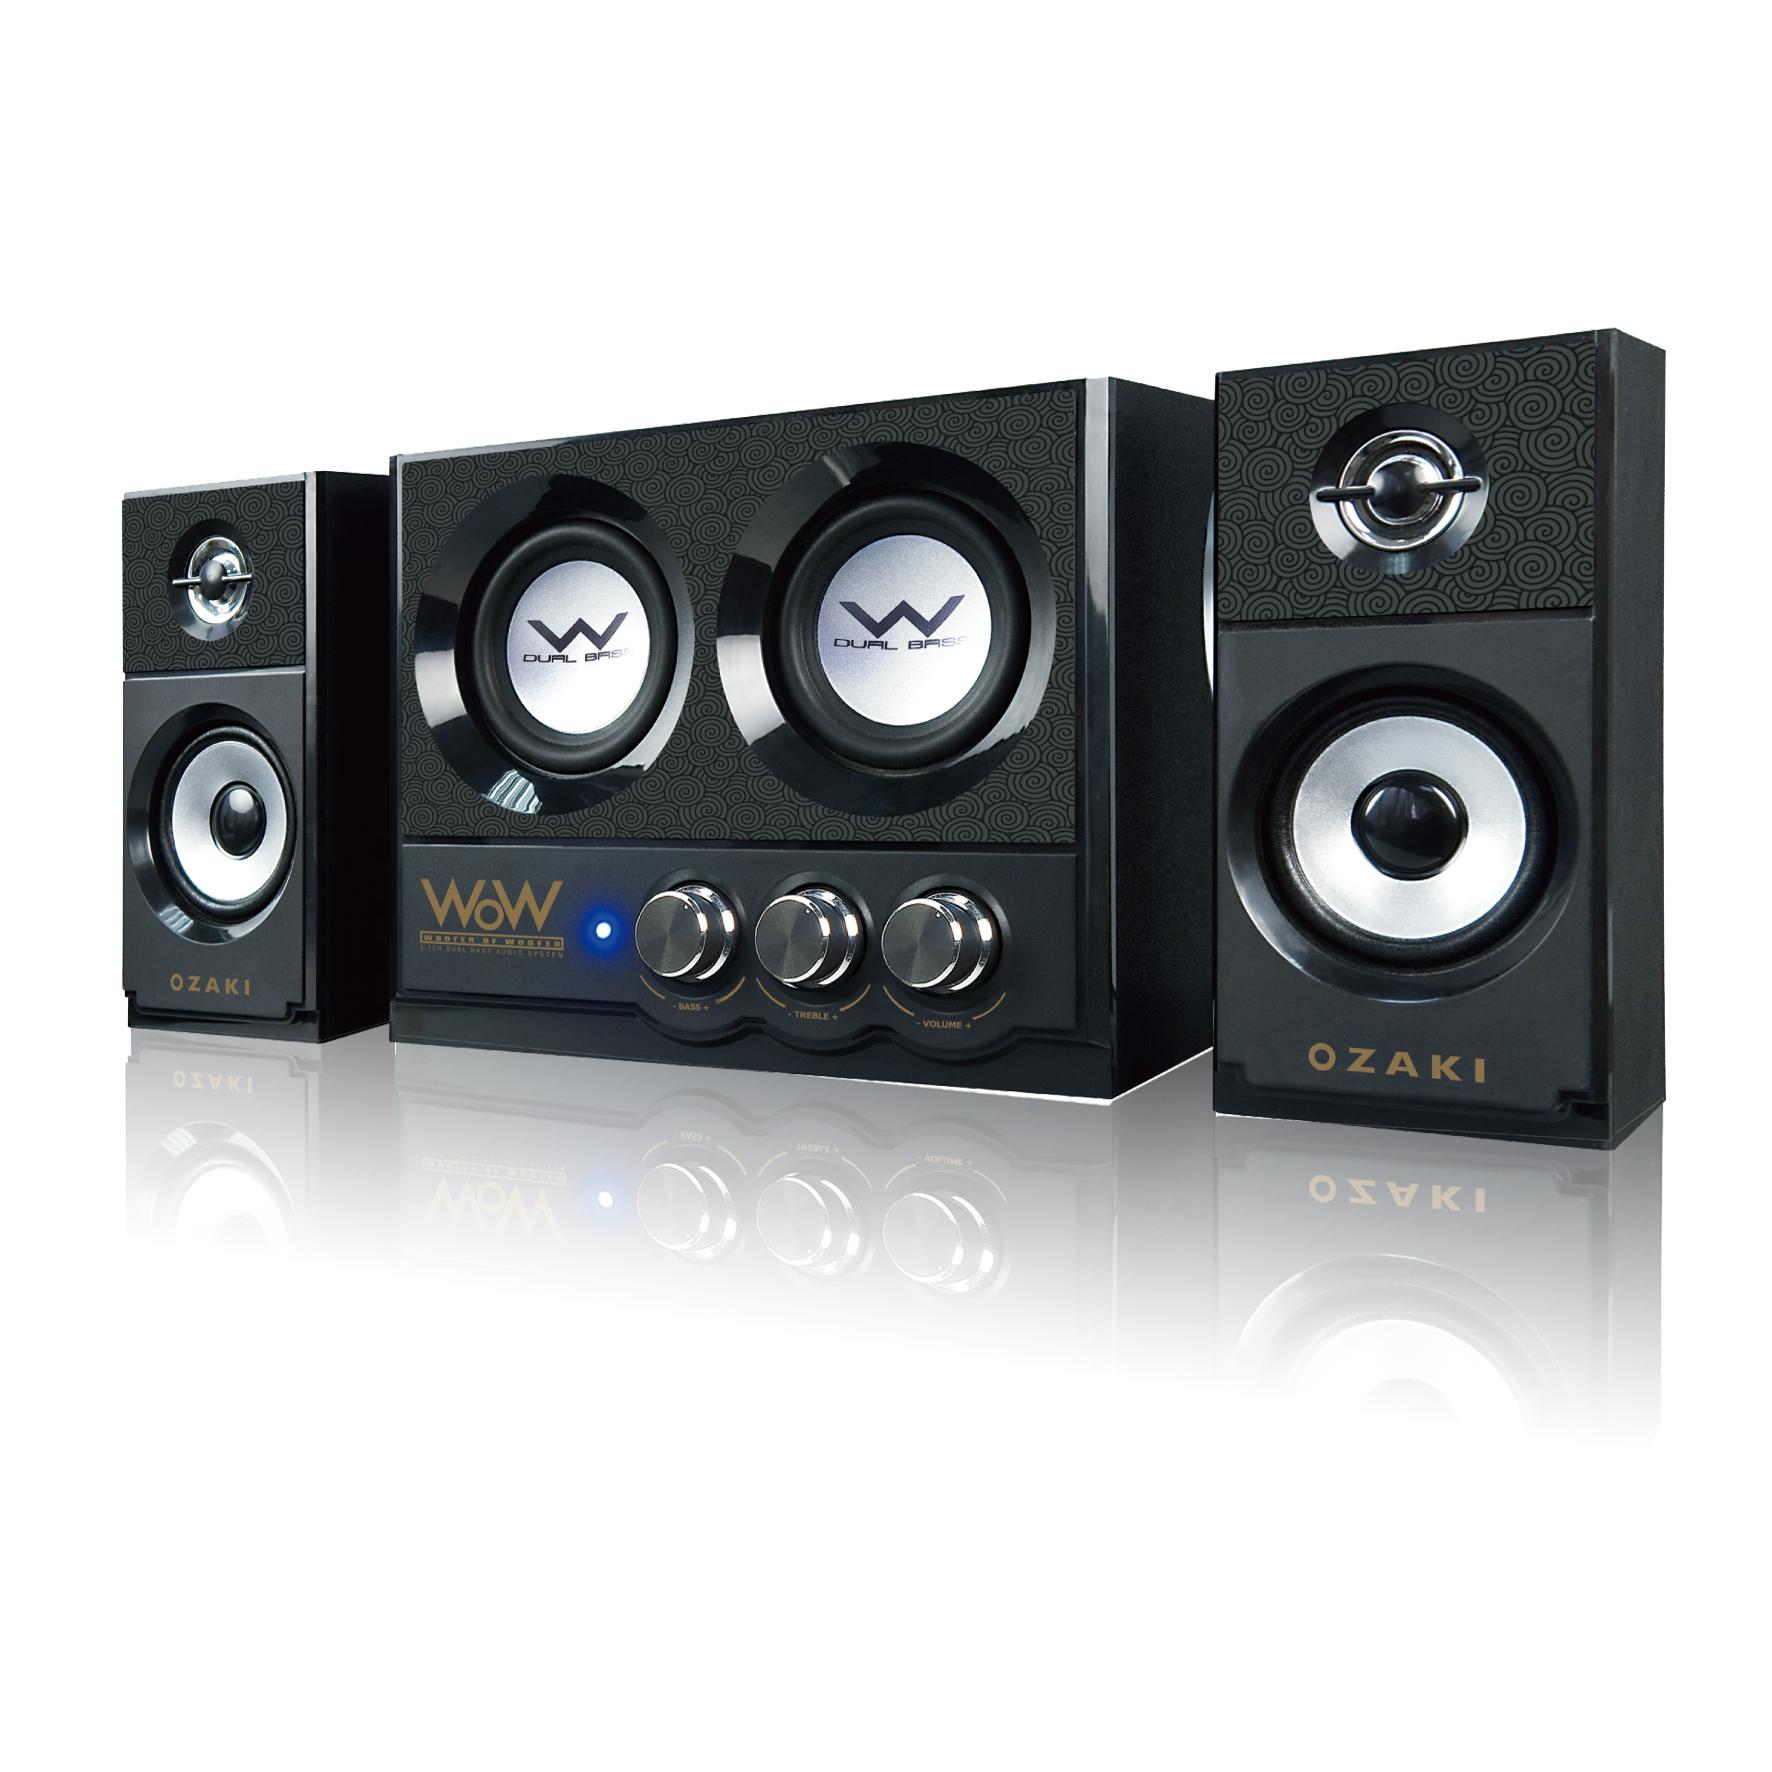 Σετ από Ηχεία Ηχοσύστημα Wr325 2.2 Ozaki Wow Series Dual Bass Audio SySTem